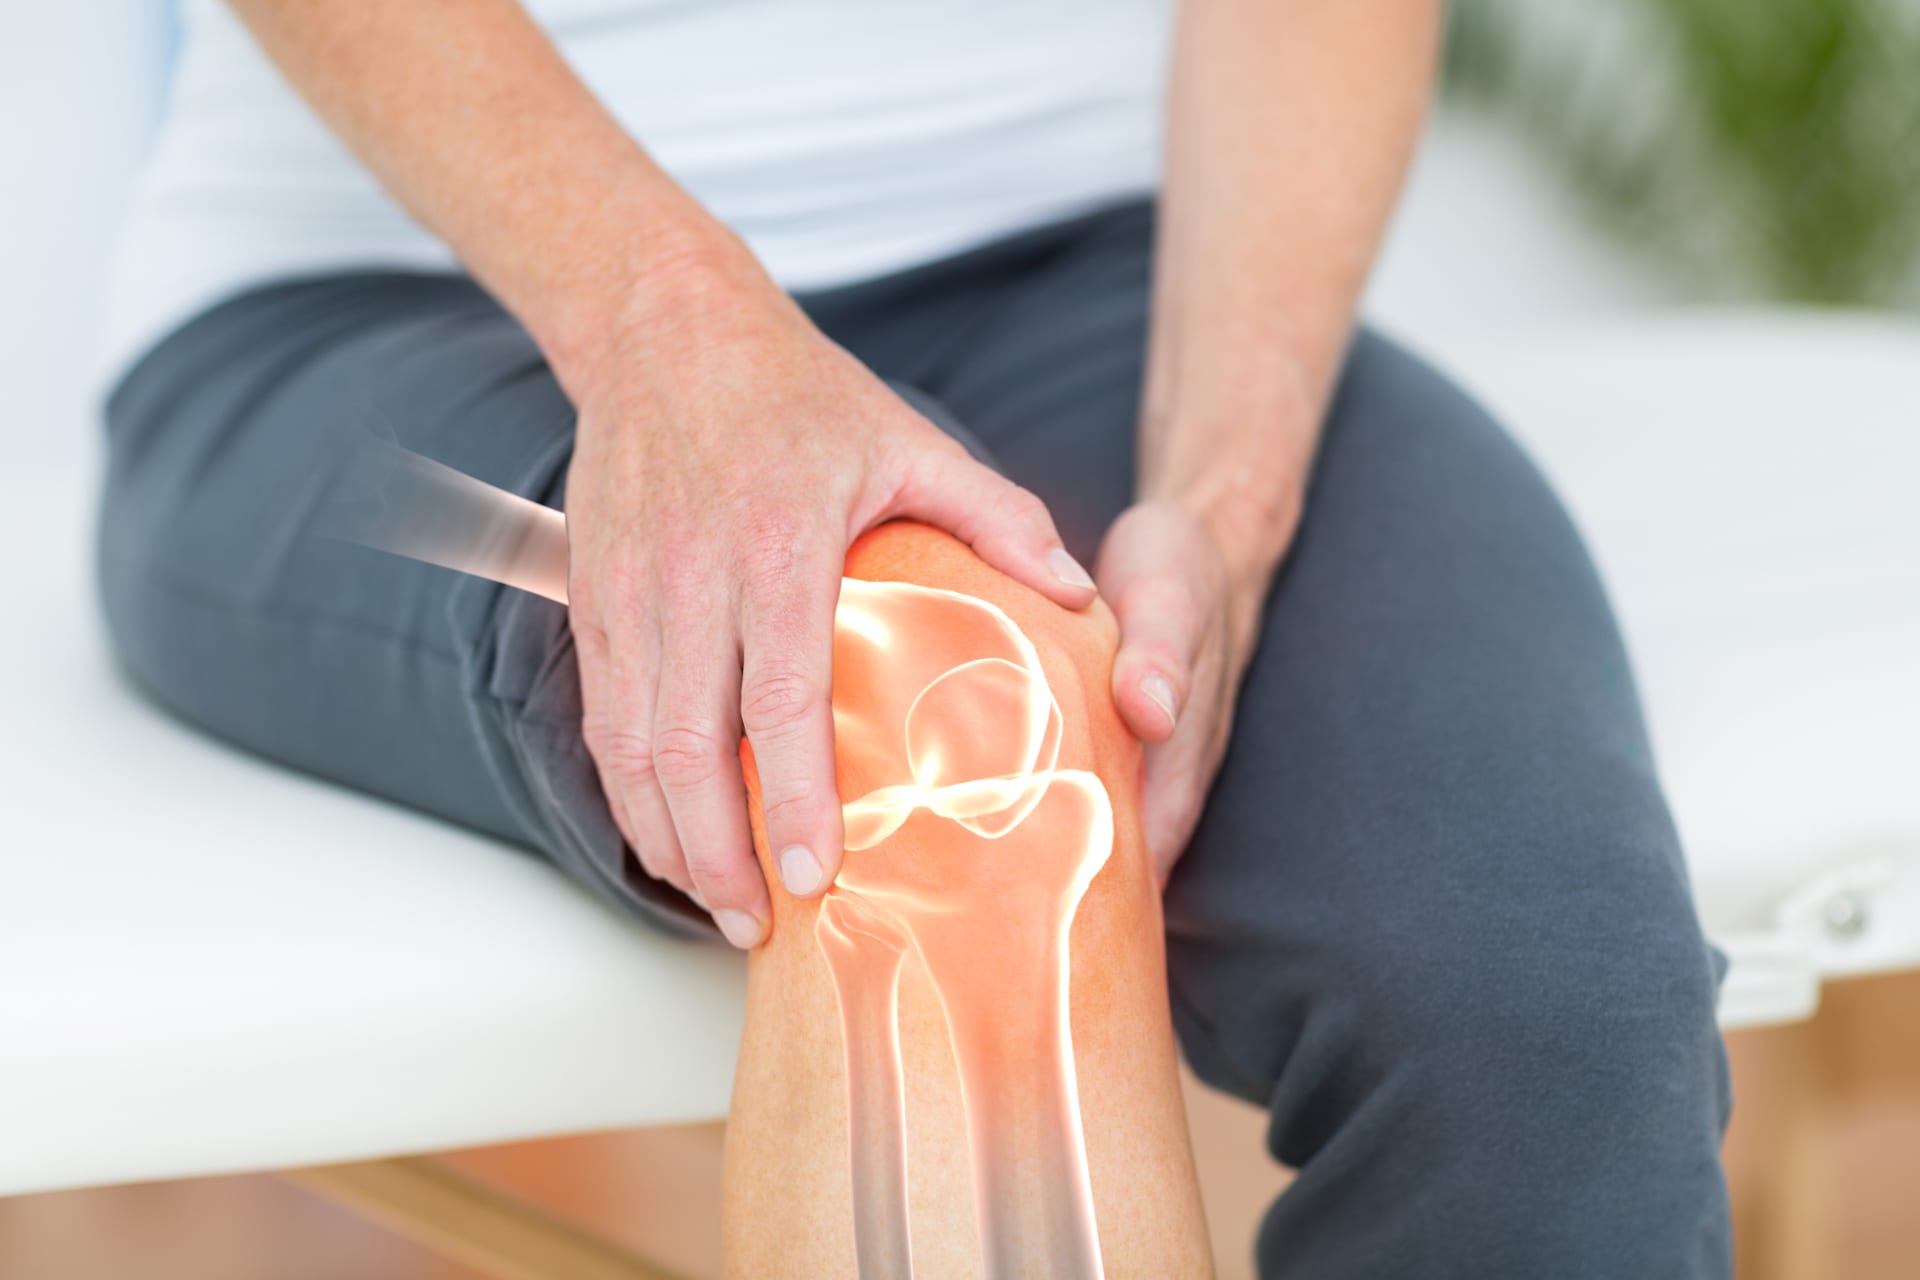 Vyvracíme mýty o zdraví: Opravdu je artritida nemoc stáří a sportovci jí netrpí?